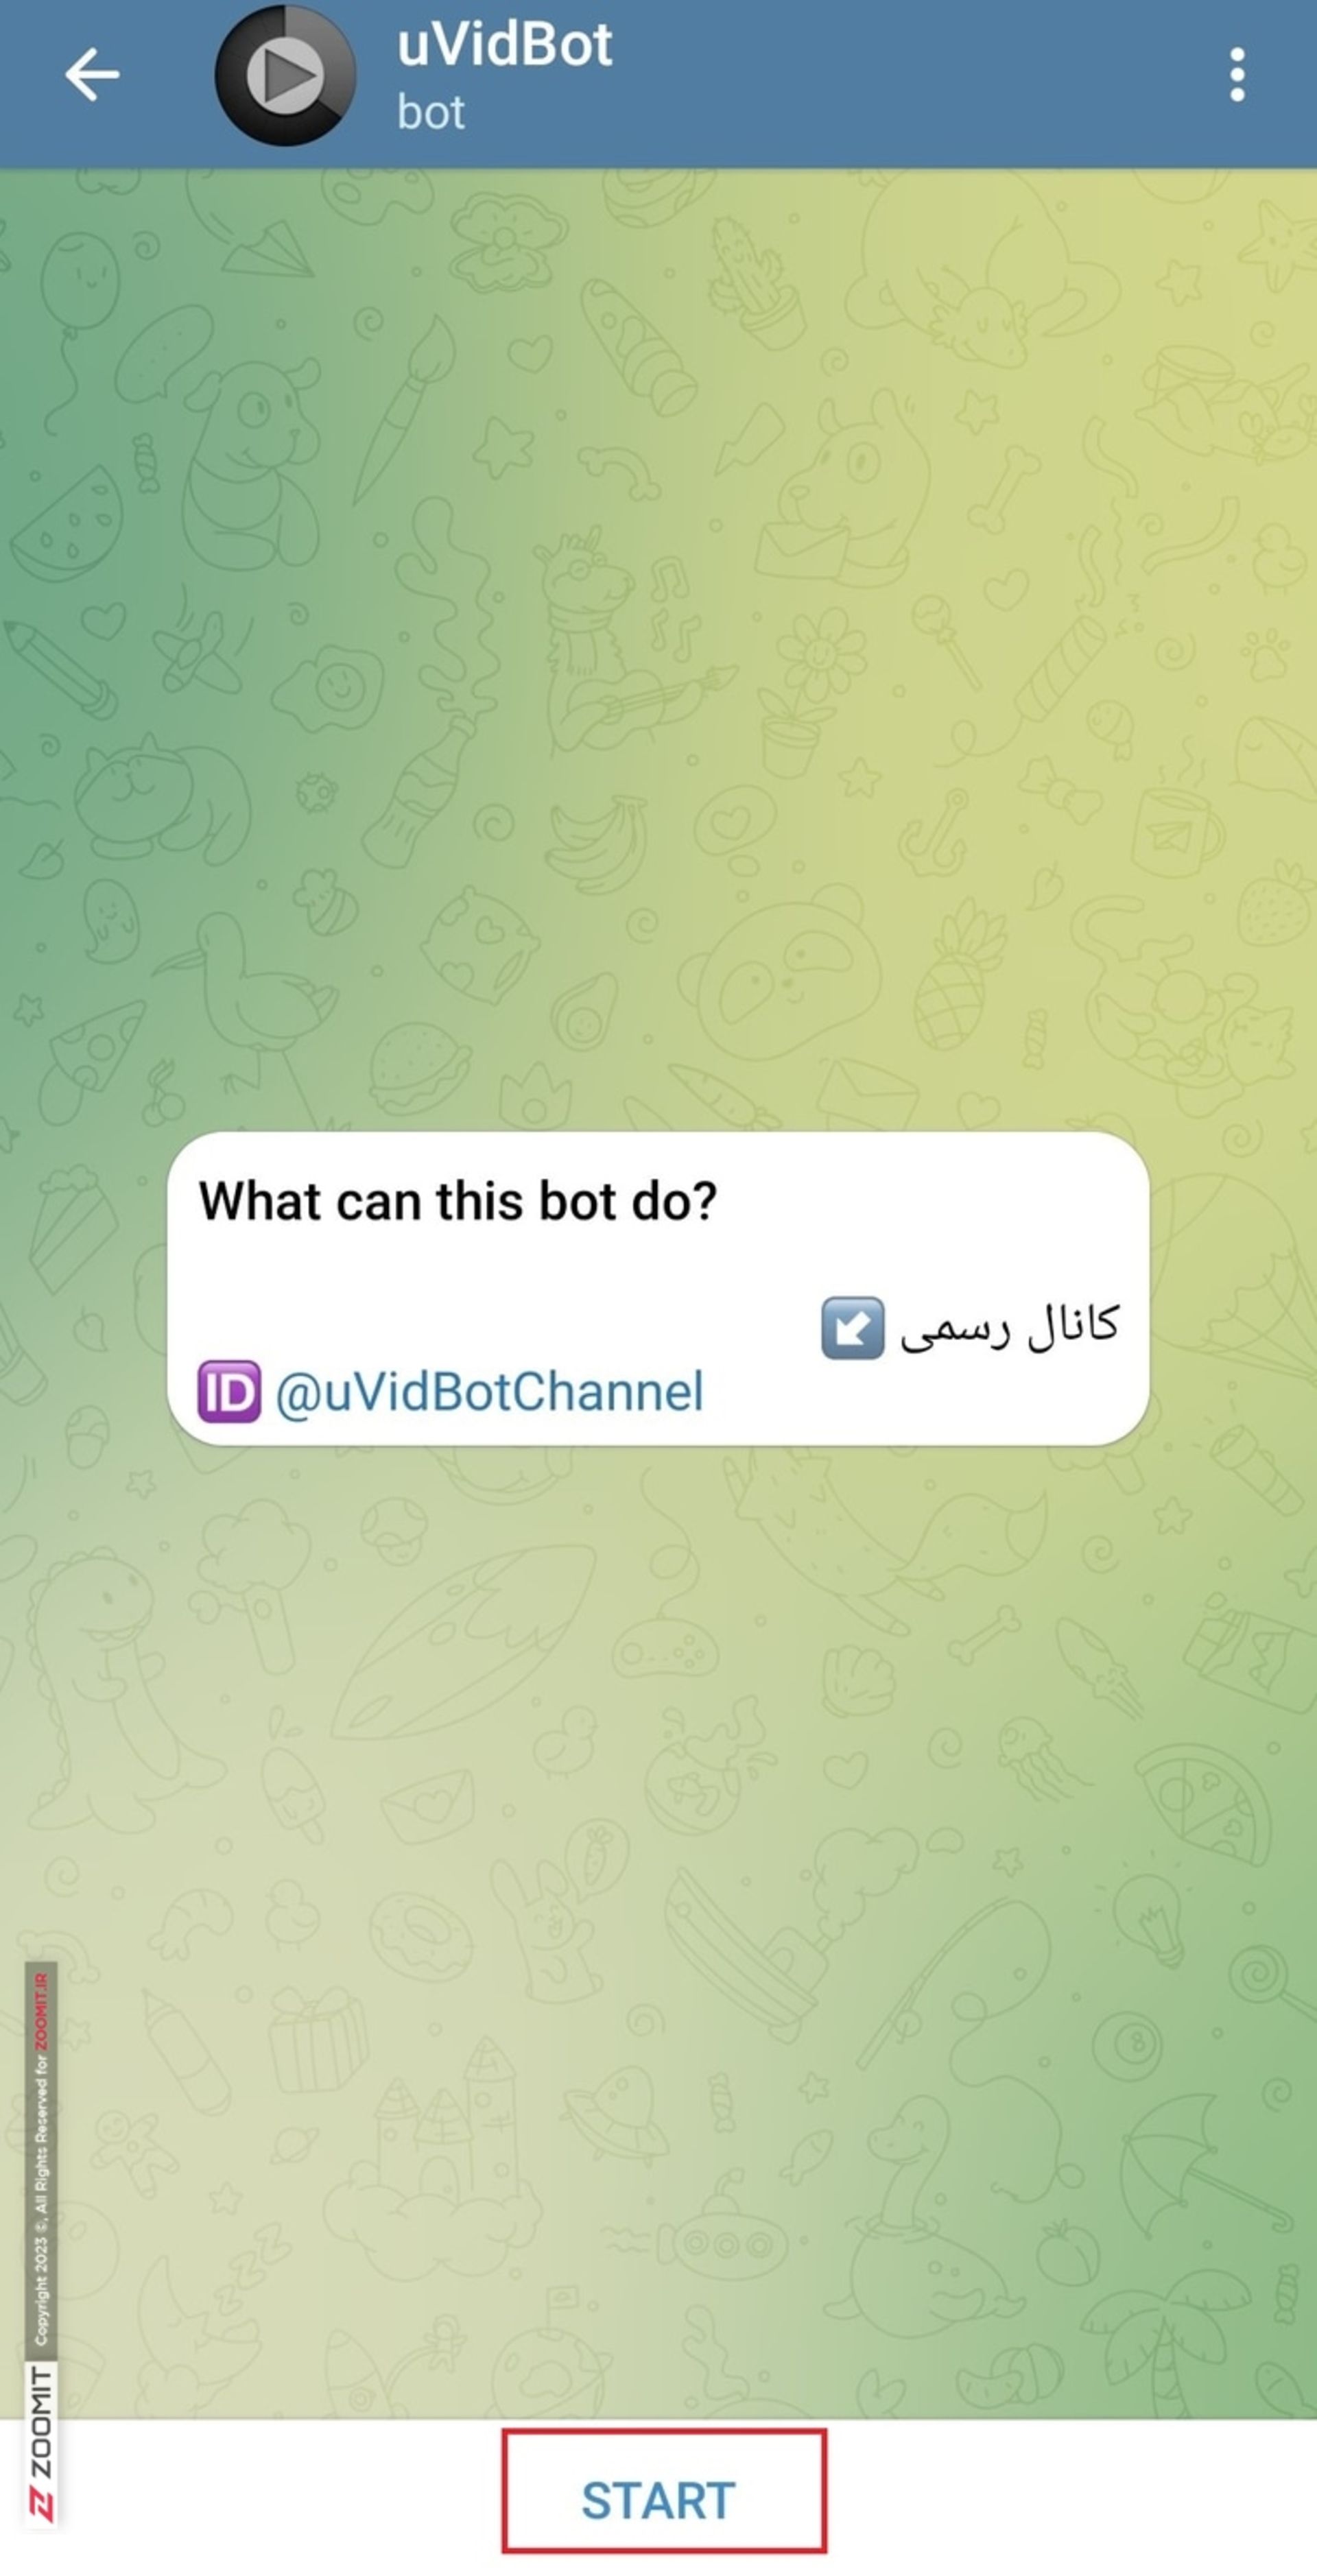 مرحله اول دانلود فیلم یوتیوب با ربات تلگرامی uvidbot